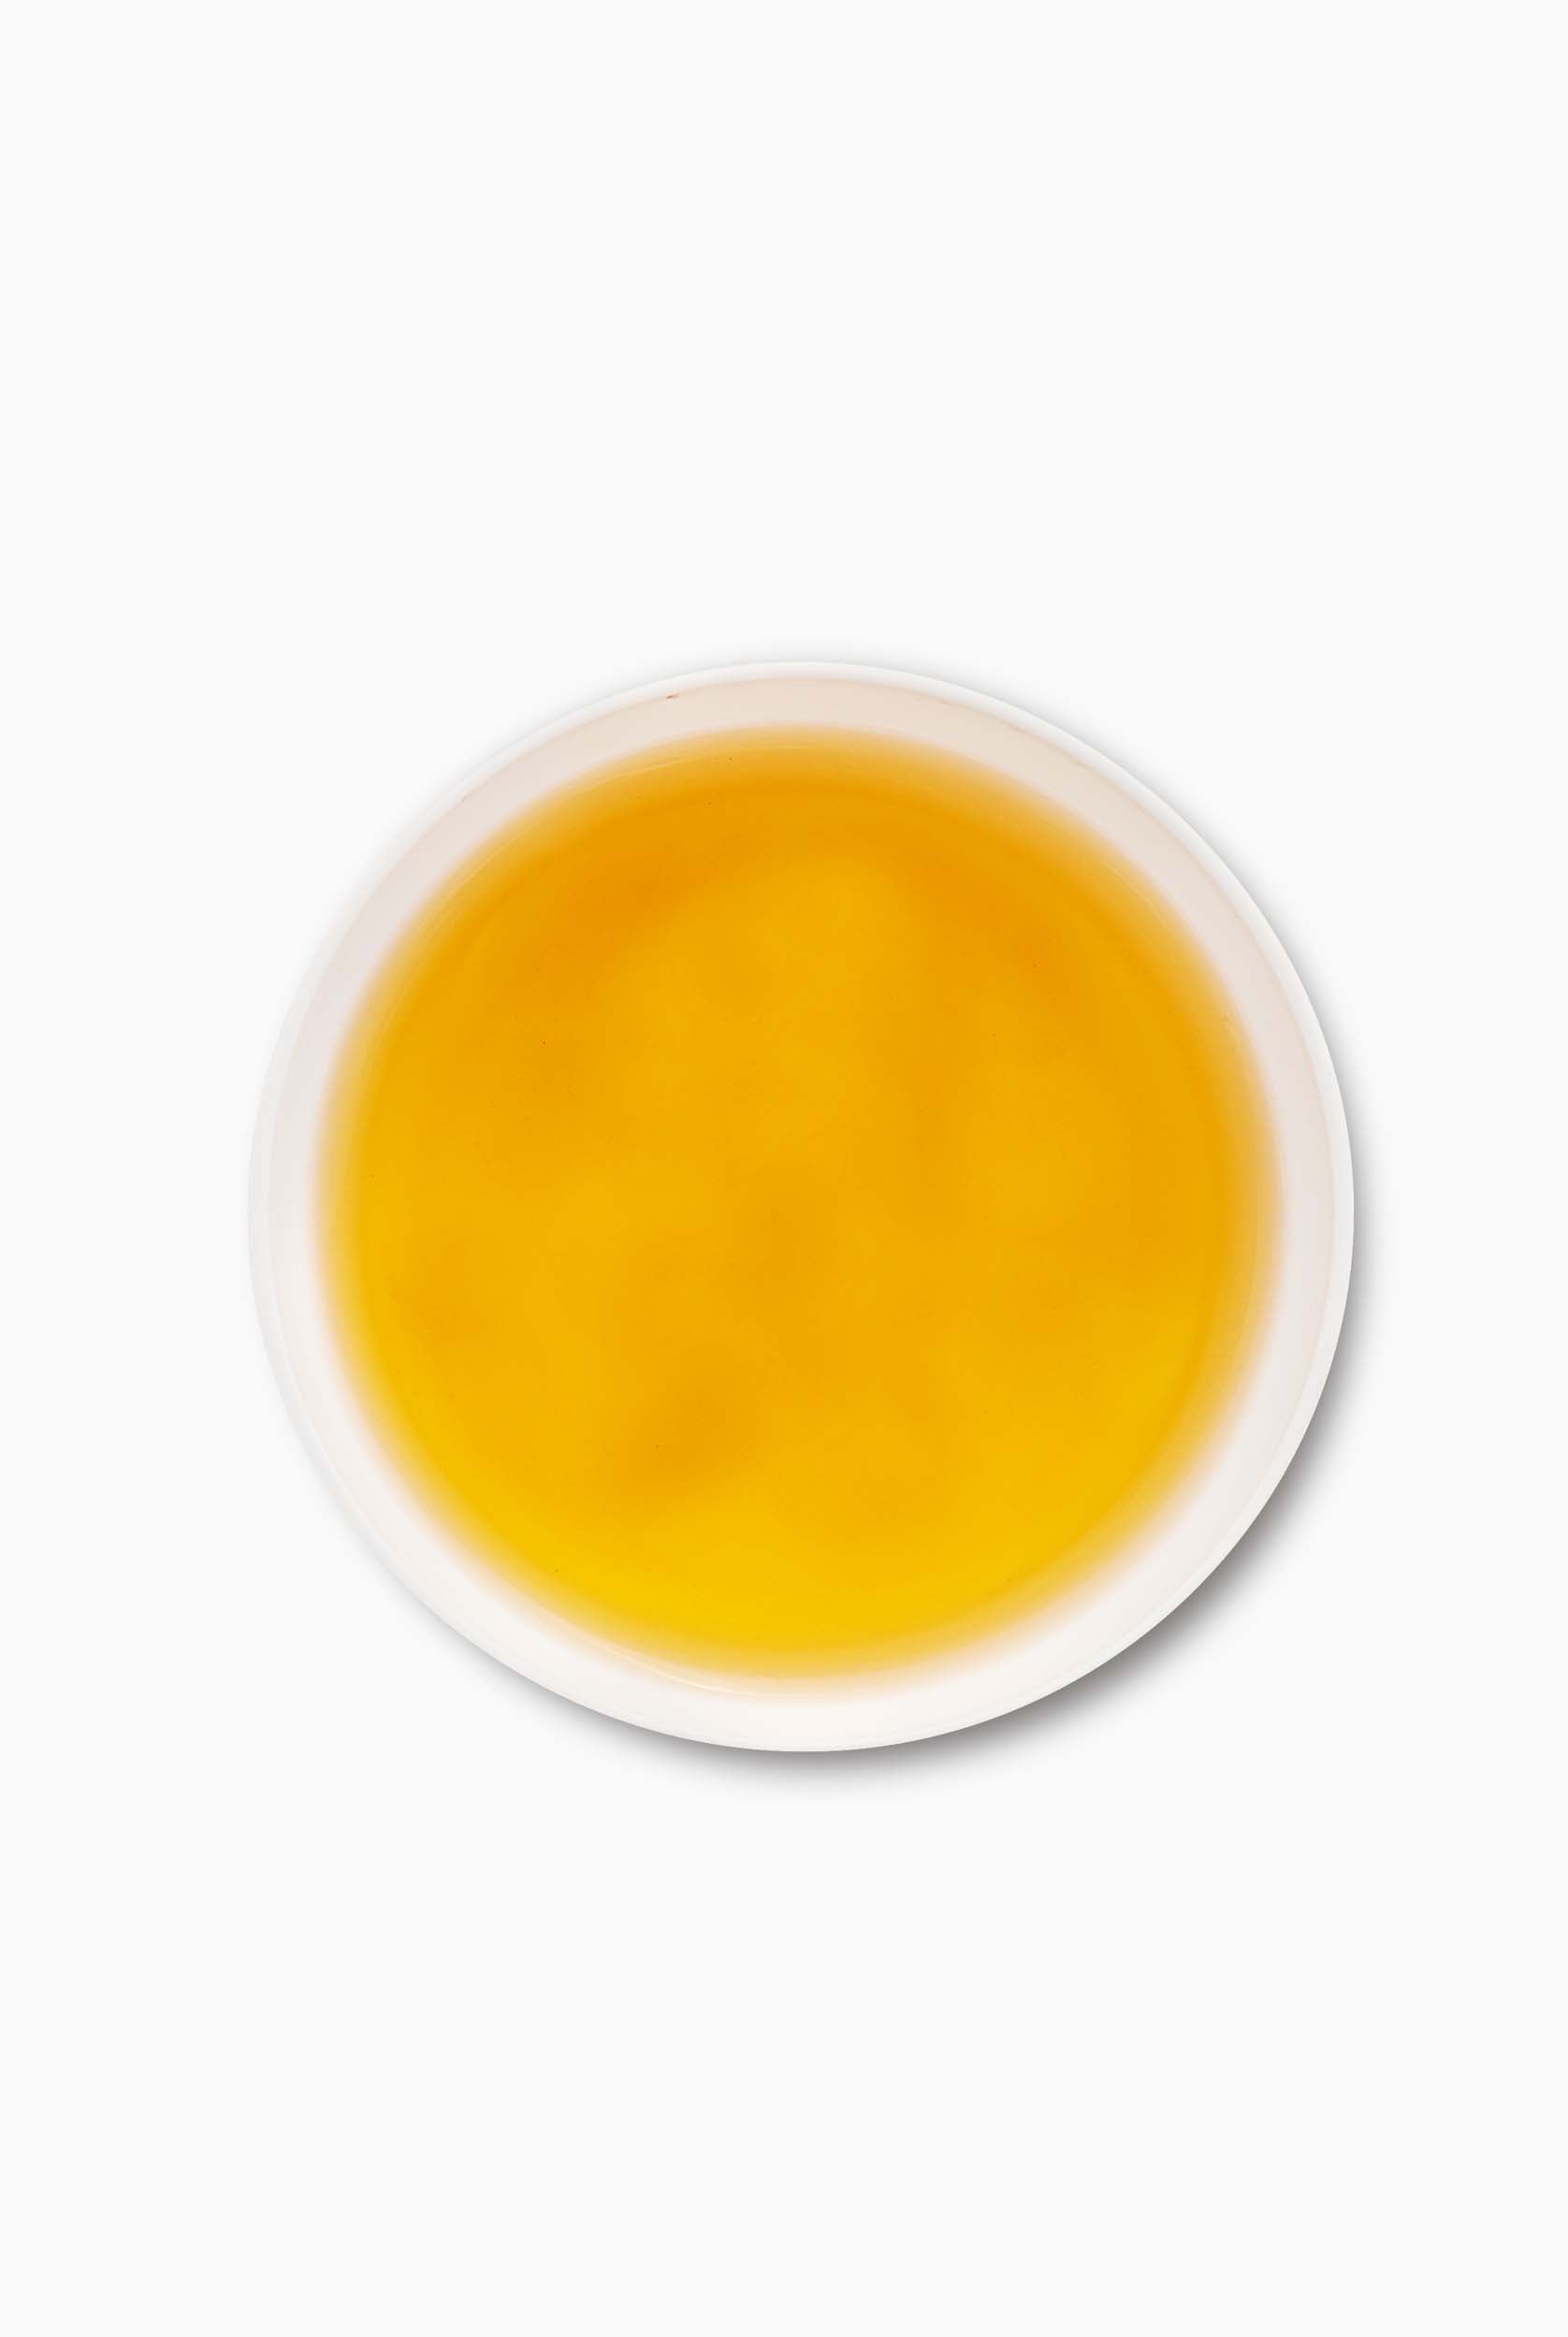 A Bright Golden Liquor describes - Moonlight White Tea from Darjeeling 